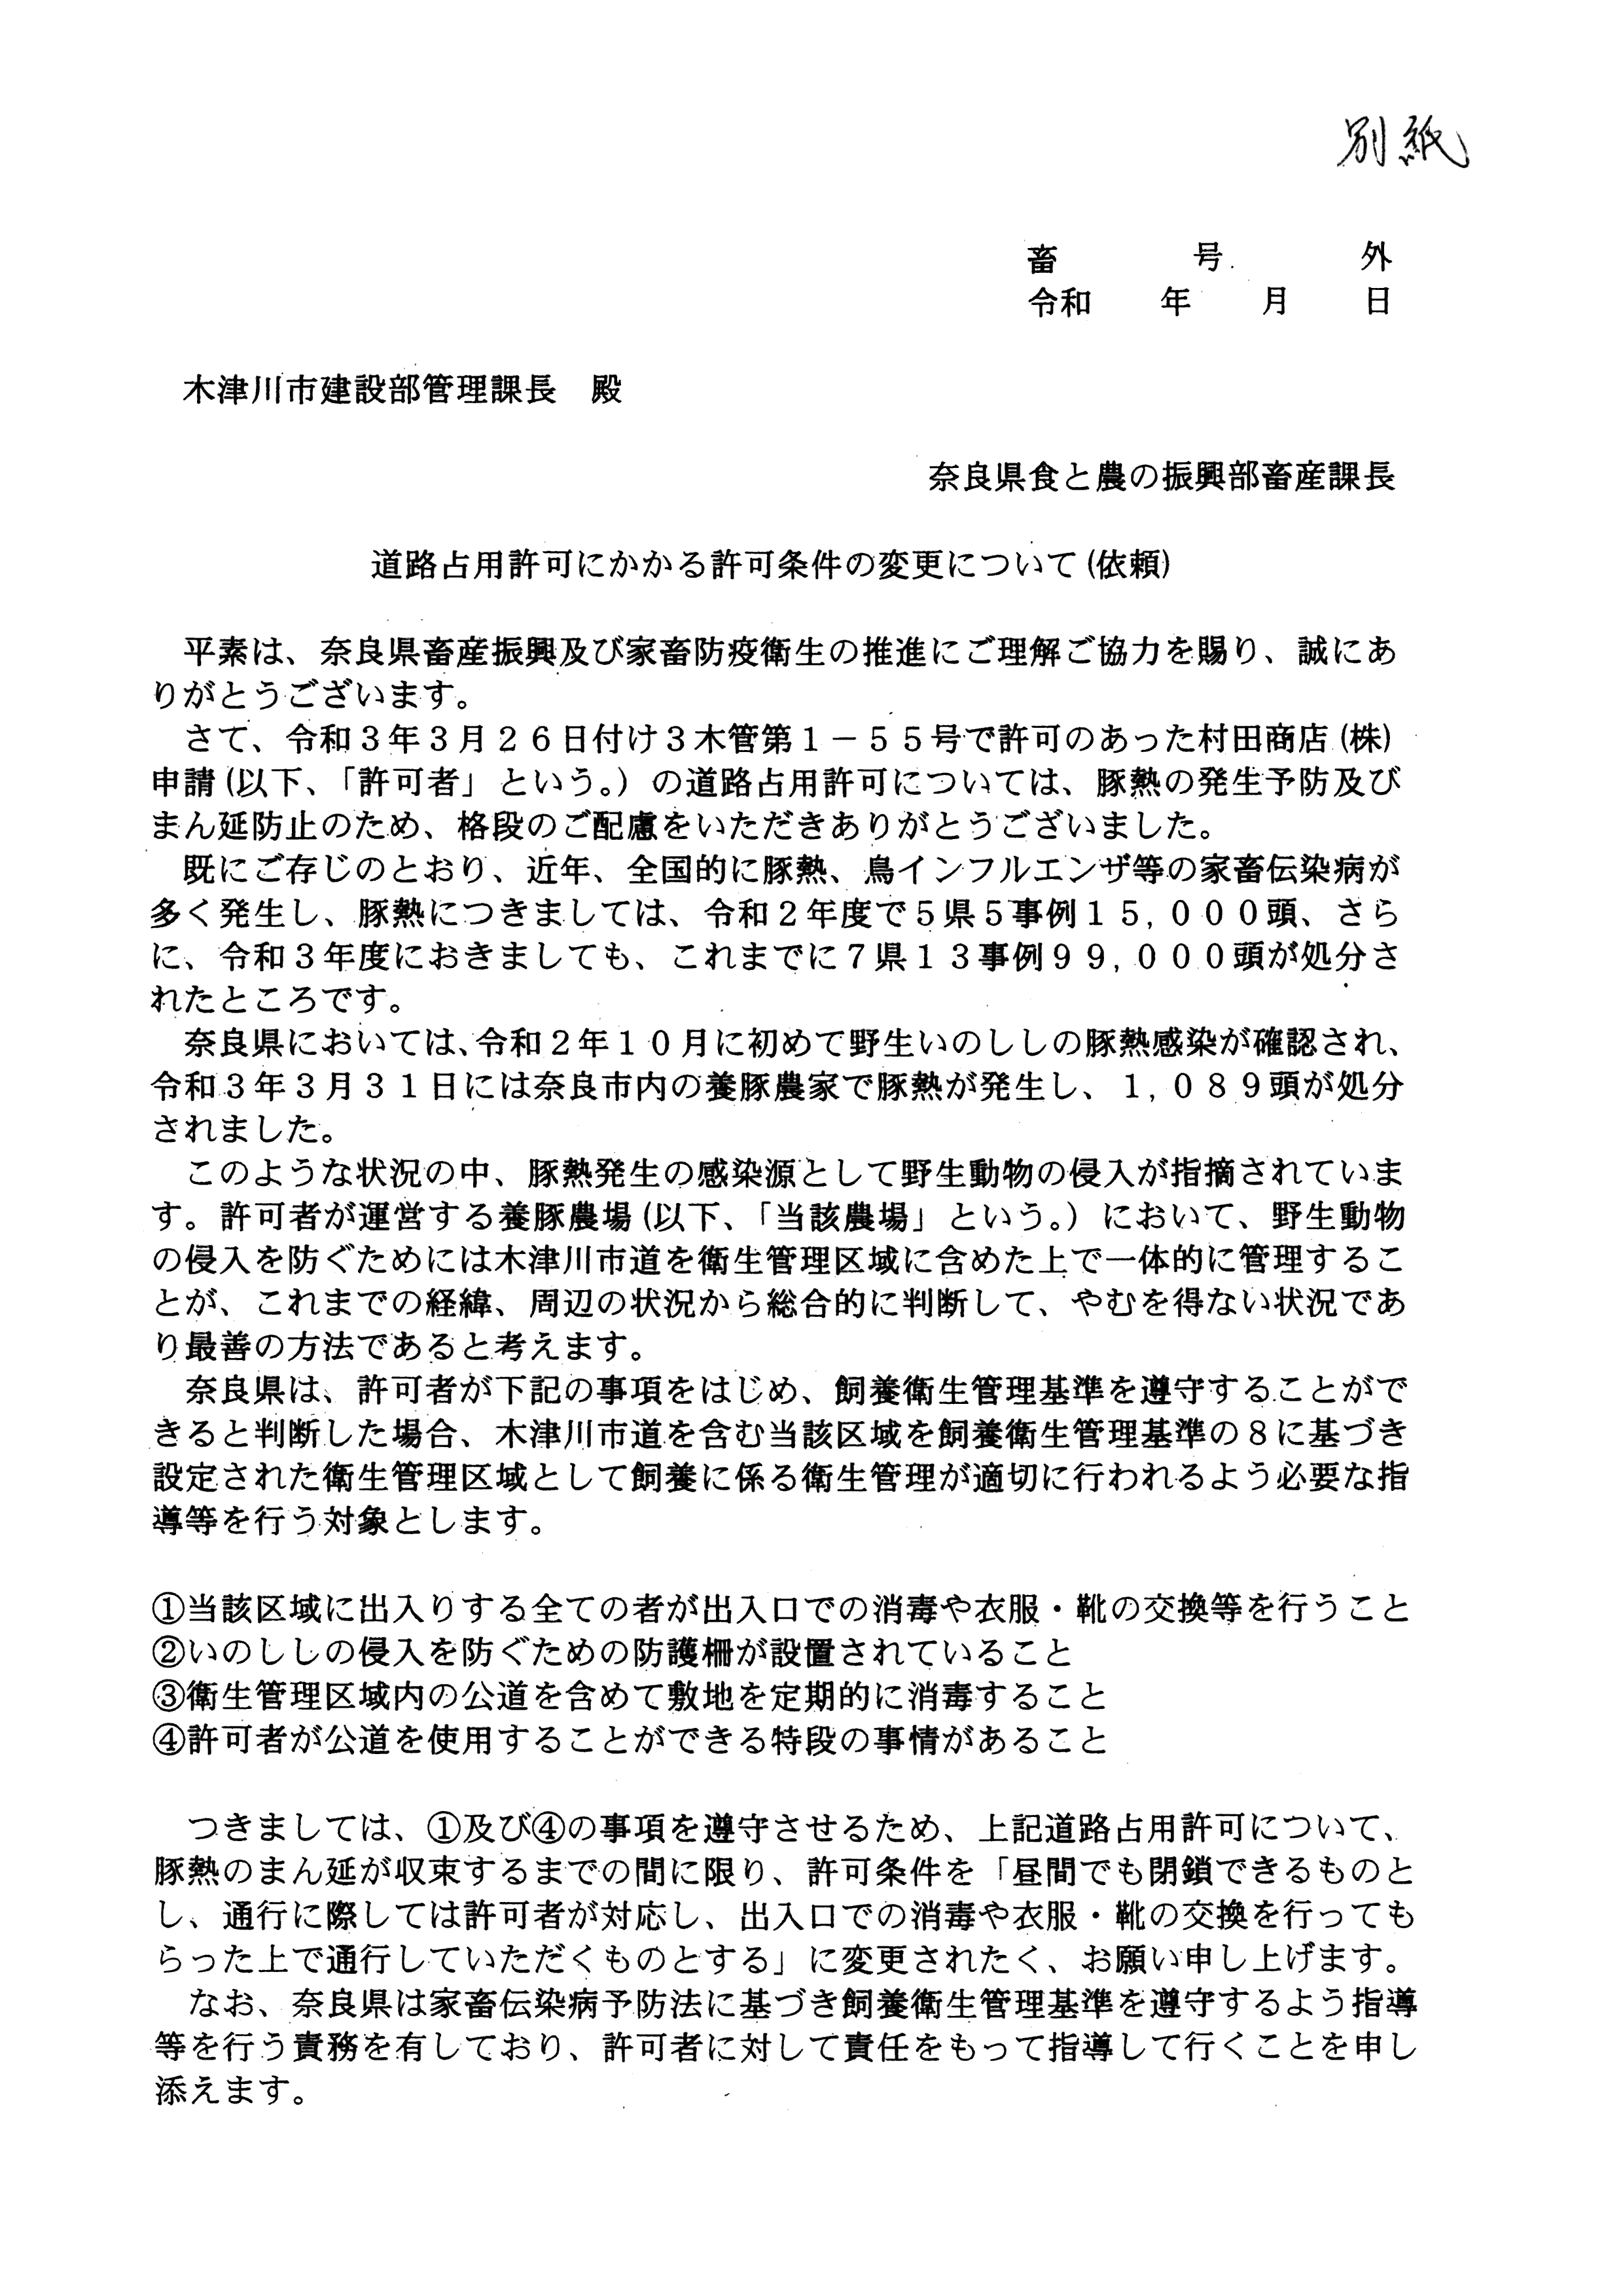 令和4年3月22日-（株）村田商店に対する市道（加2092号）占用許可の3者協議-05